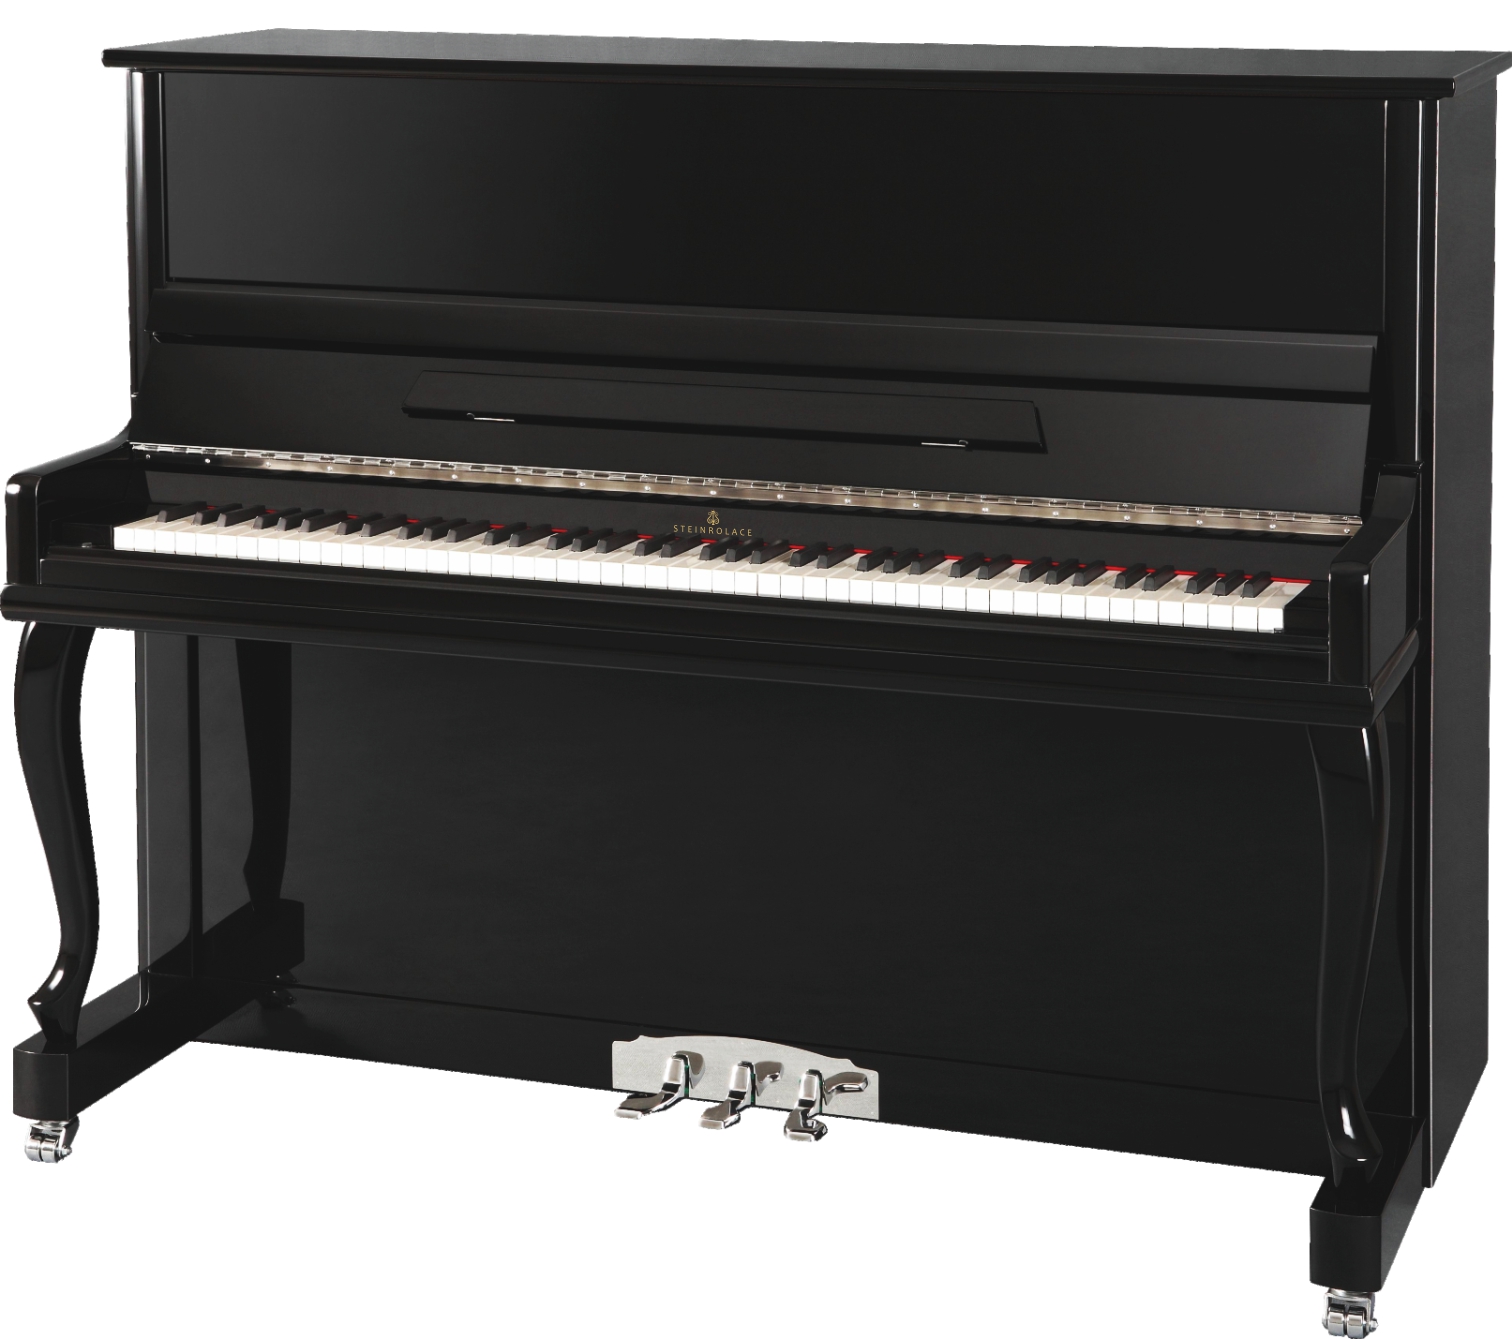 R23A 立式钢琴生产厂家